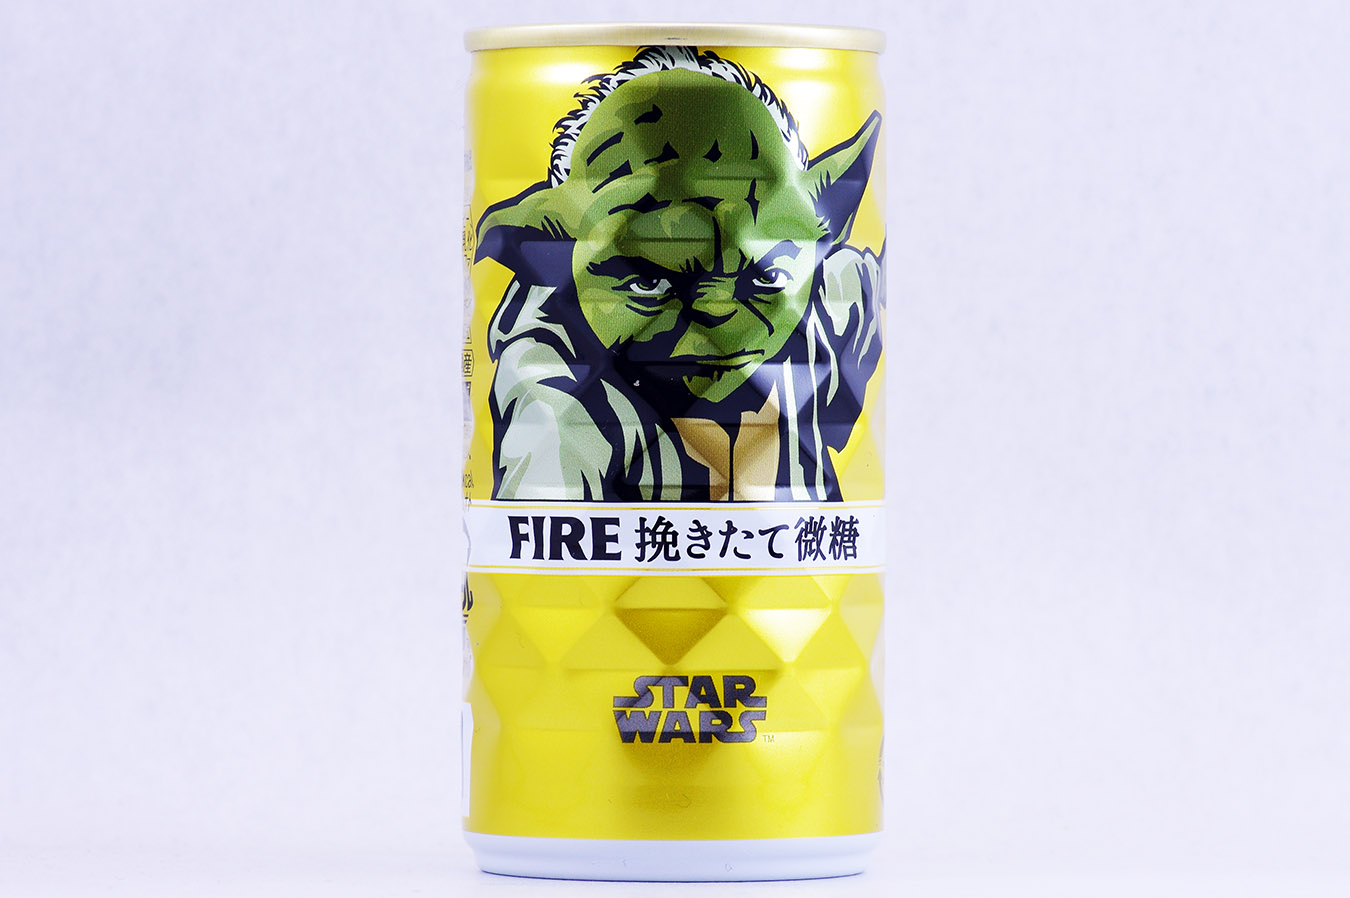 FIRE 挽きたて微糖 「STAR WARS」限定デザイン ヨーダ 2015年12月